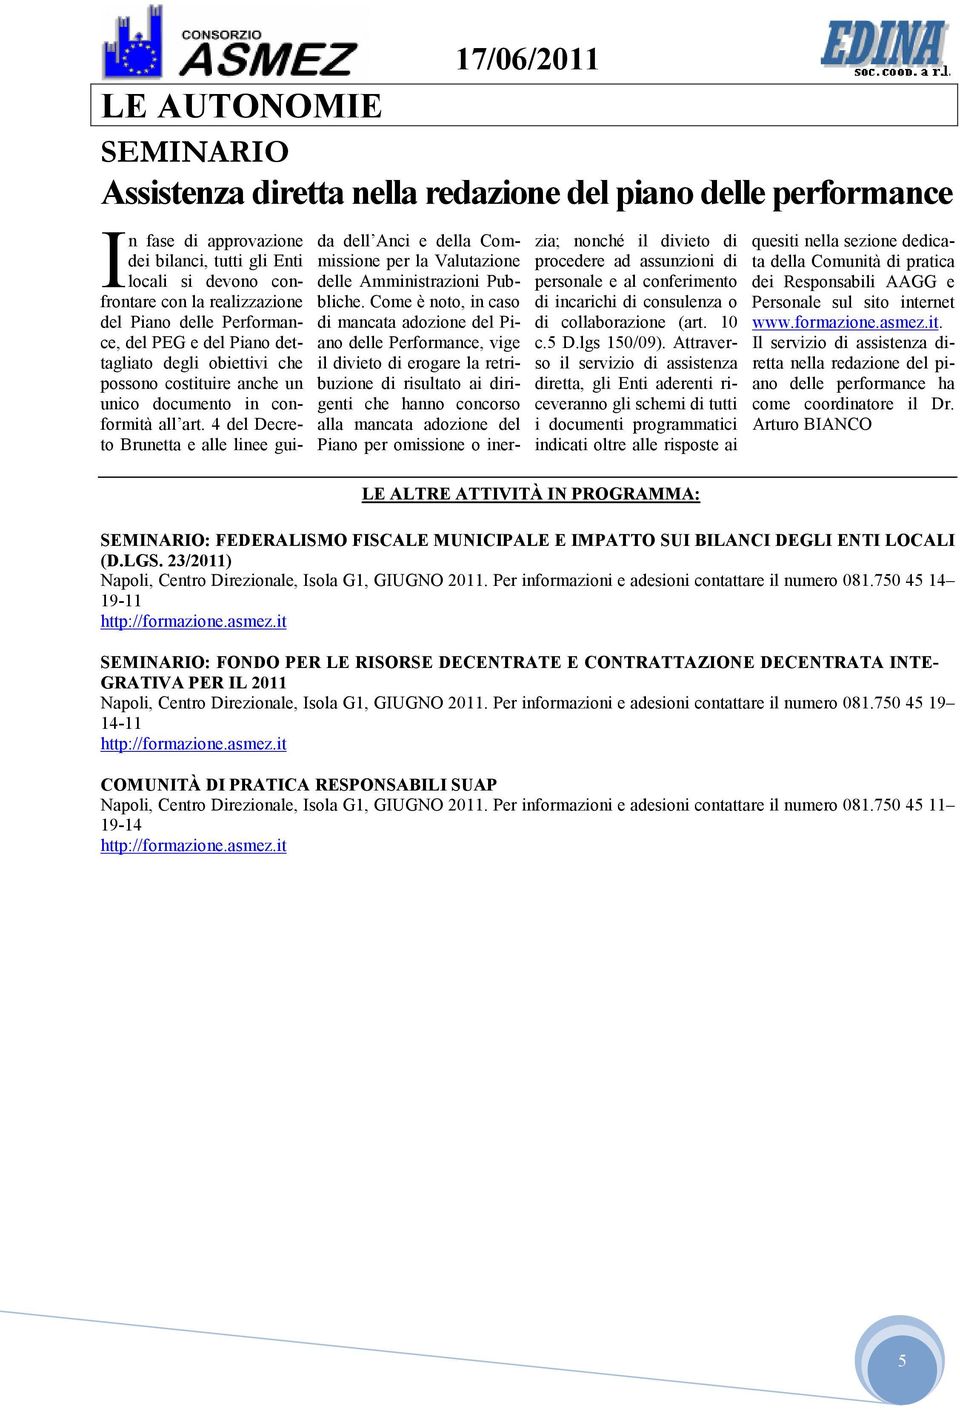 4 del Decreto Brunetta e alle linee guida dell Anci e della Commissione per la Valutazione delle Amministrazioni Pubbliche.